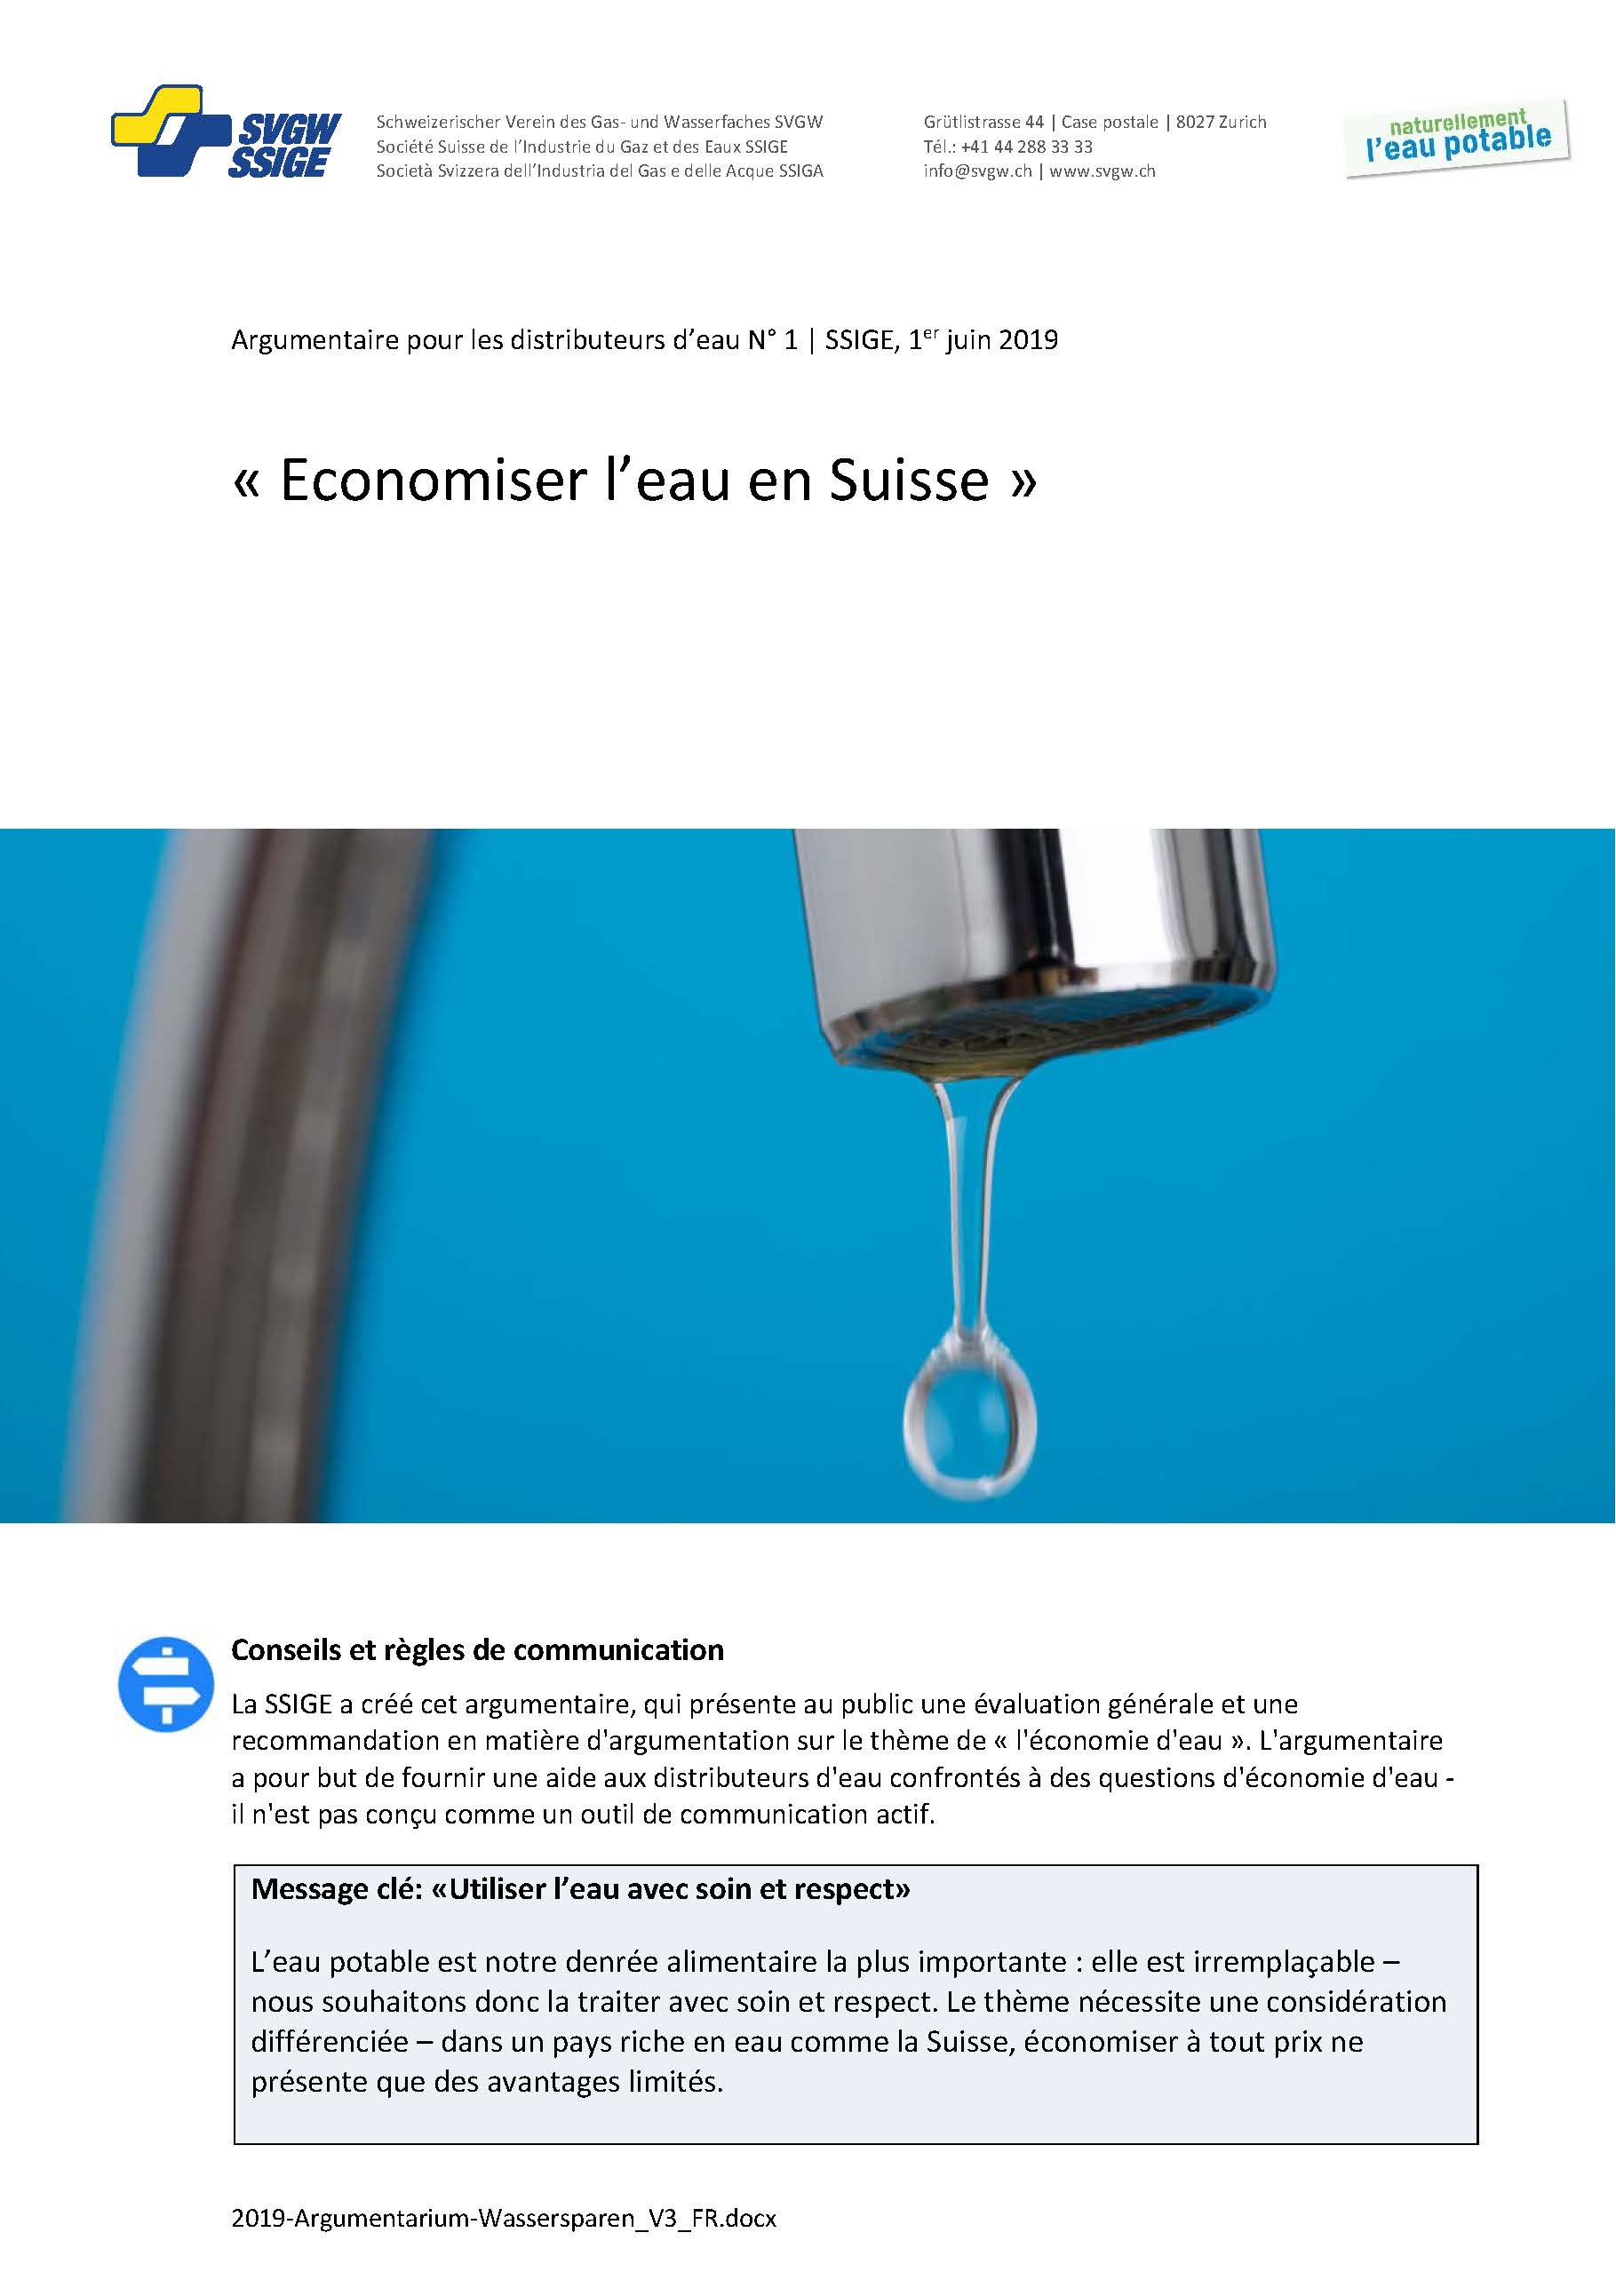 Argumentaire: «Economiser l'eau en Suisse»